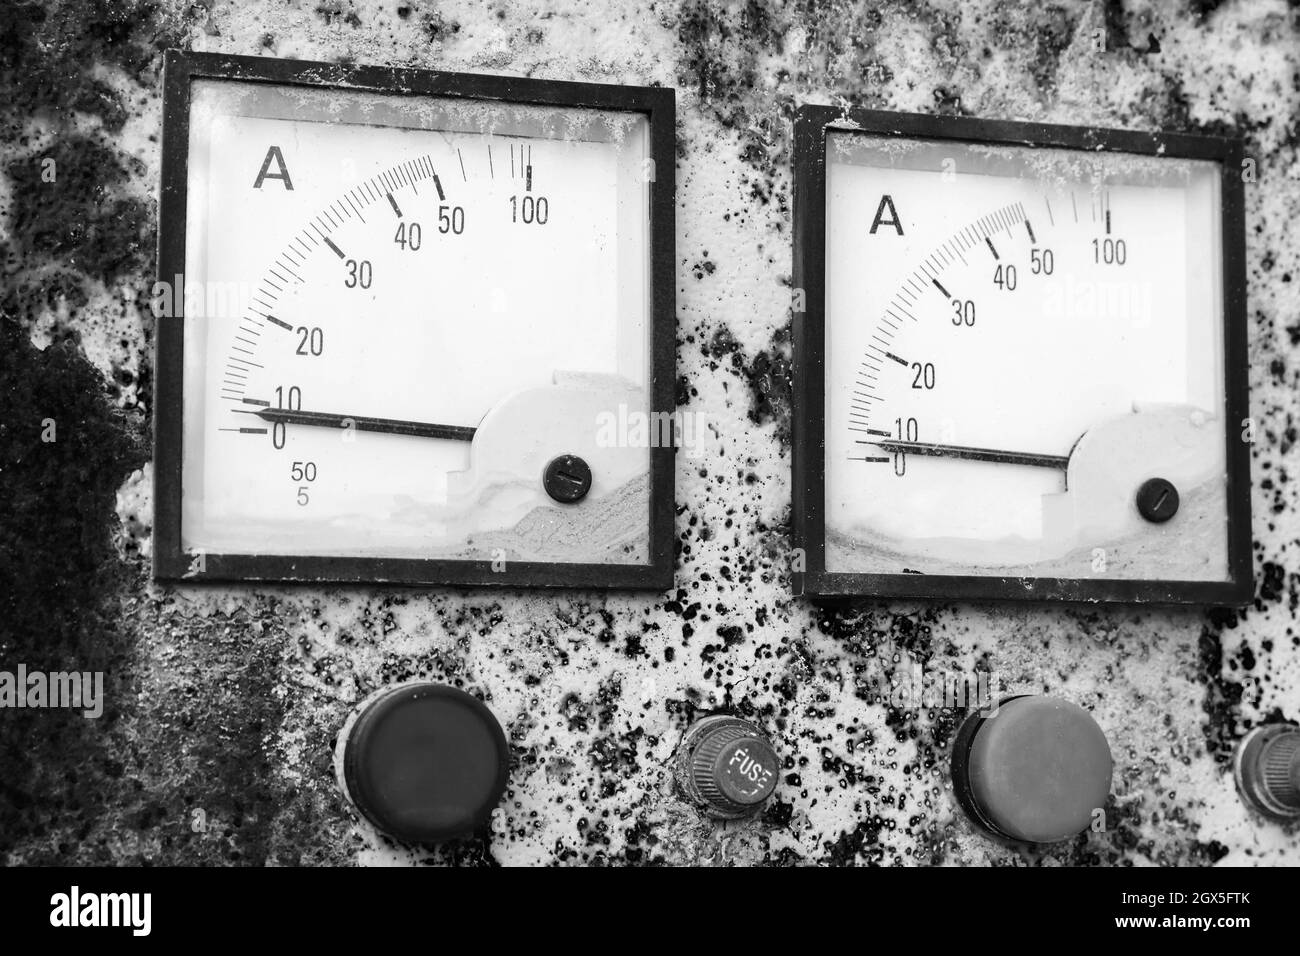 Zwei industrielle Quadratmeter zeigen einen Nullkraftpegel, Nahaufnahme eines rostigen alten elektrischen Bedienfelds. Vintage stilisiertes Schwarz-Weiß-Foto Stockfoto